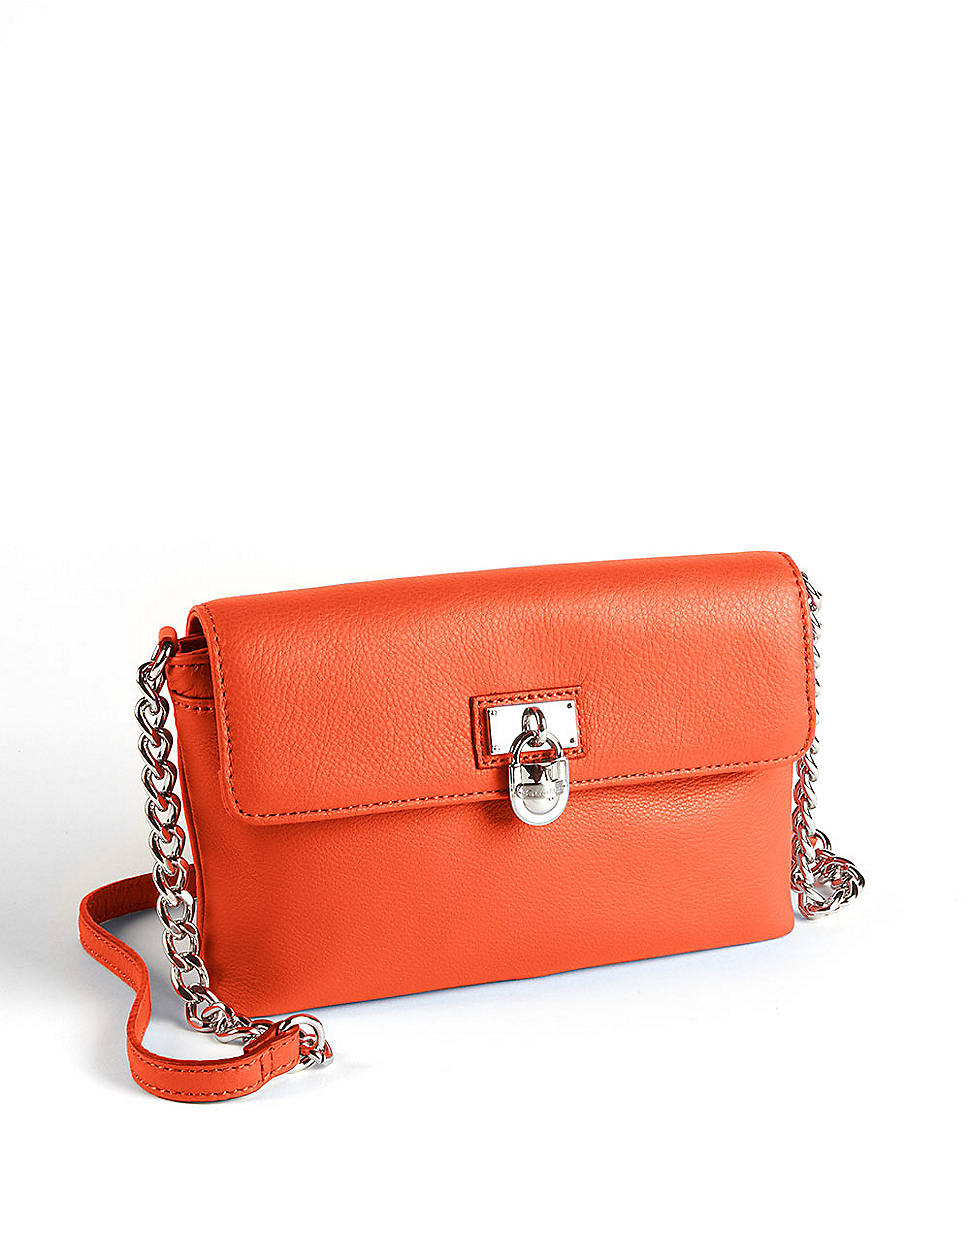 Lyst - Calvin Klein Leather Crossbody Bag in Orange